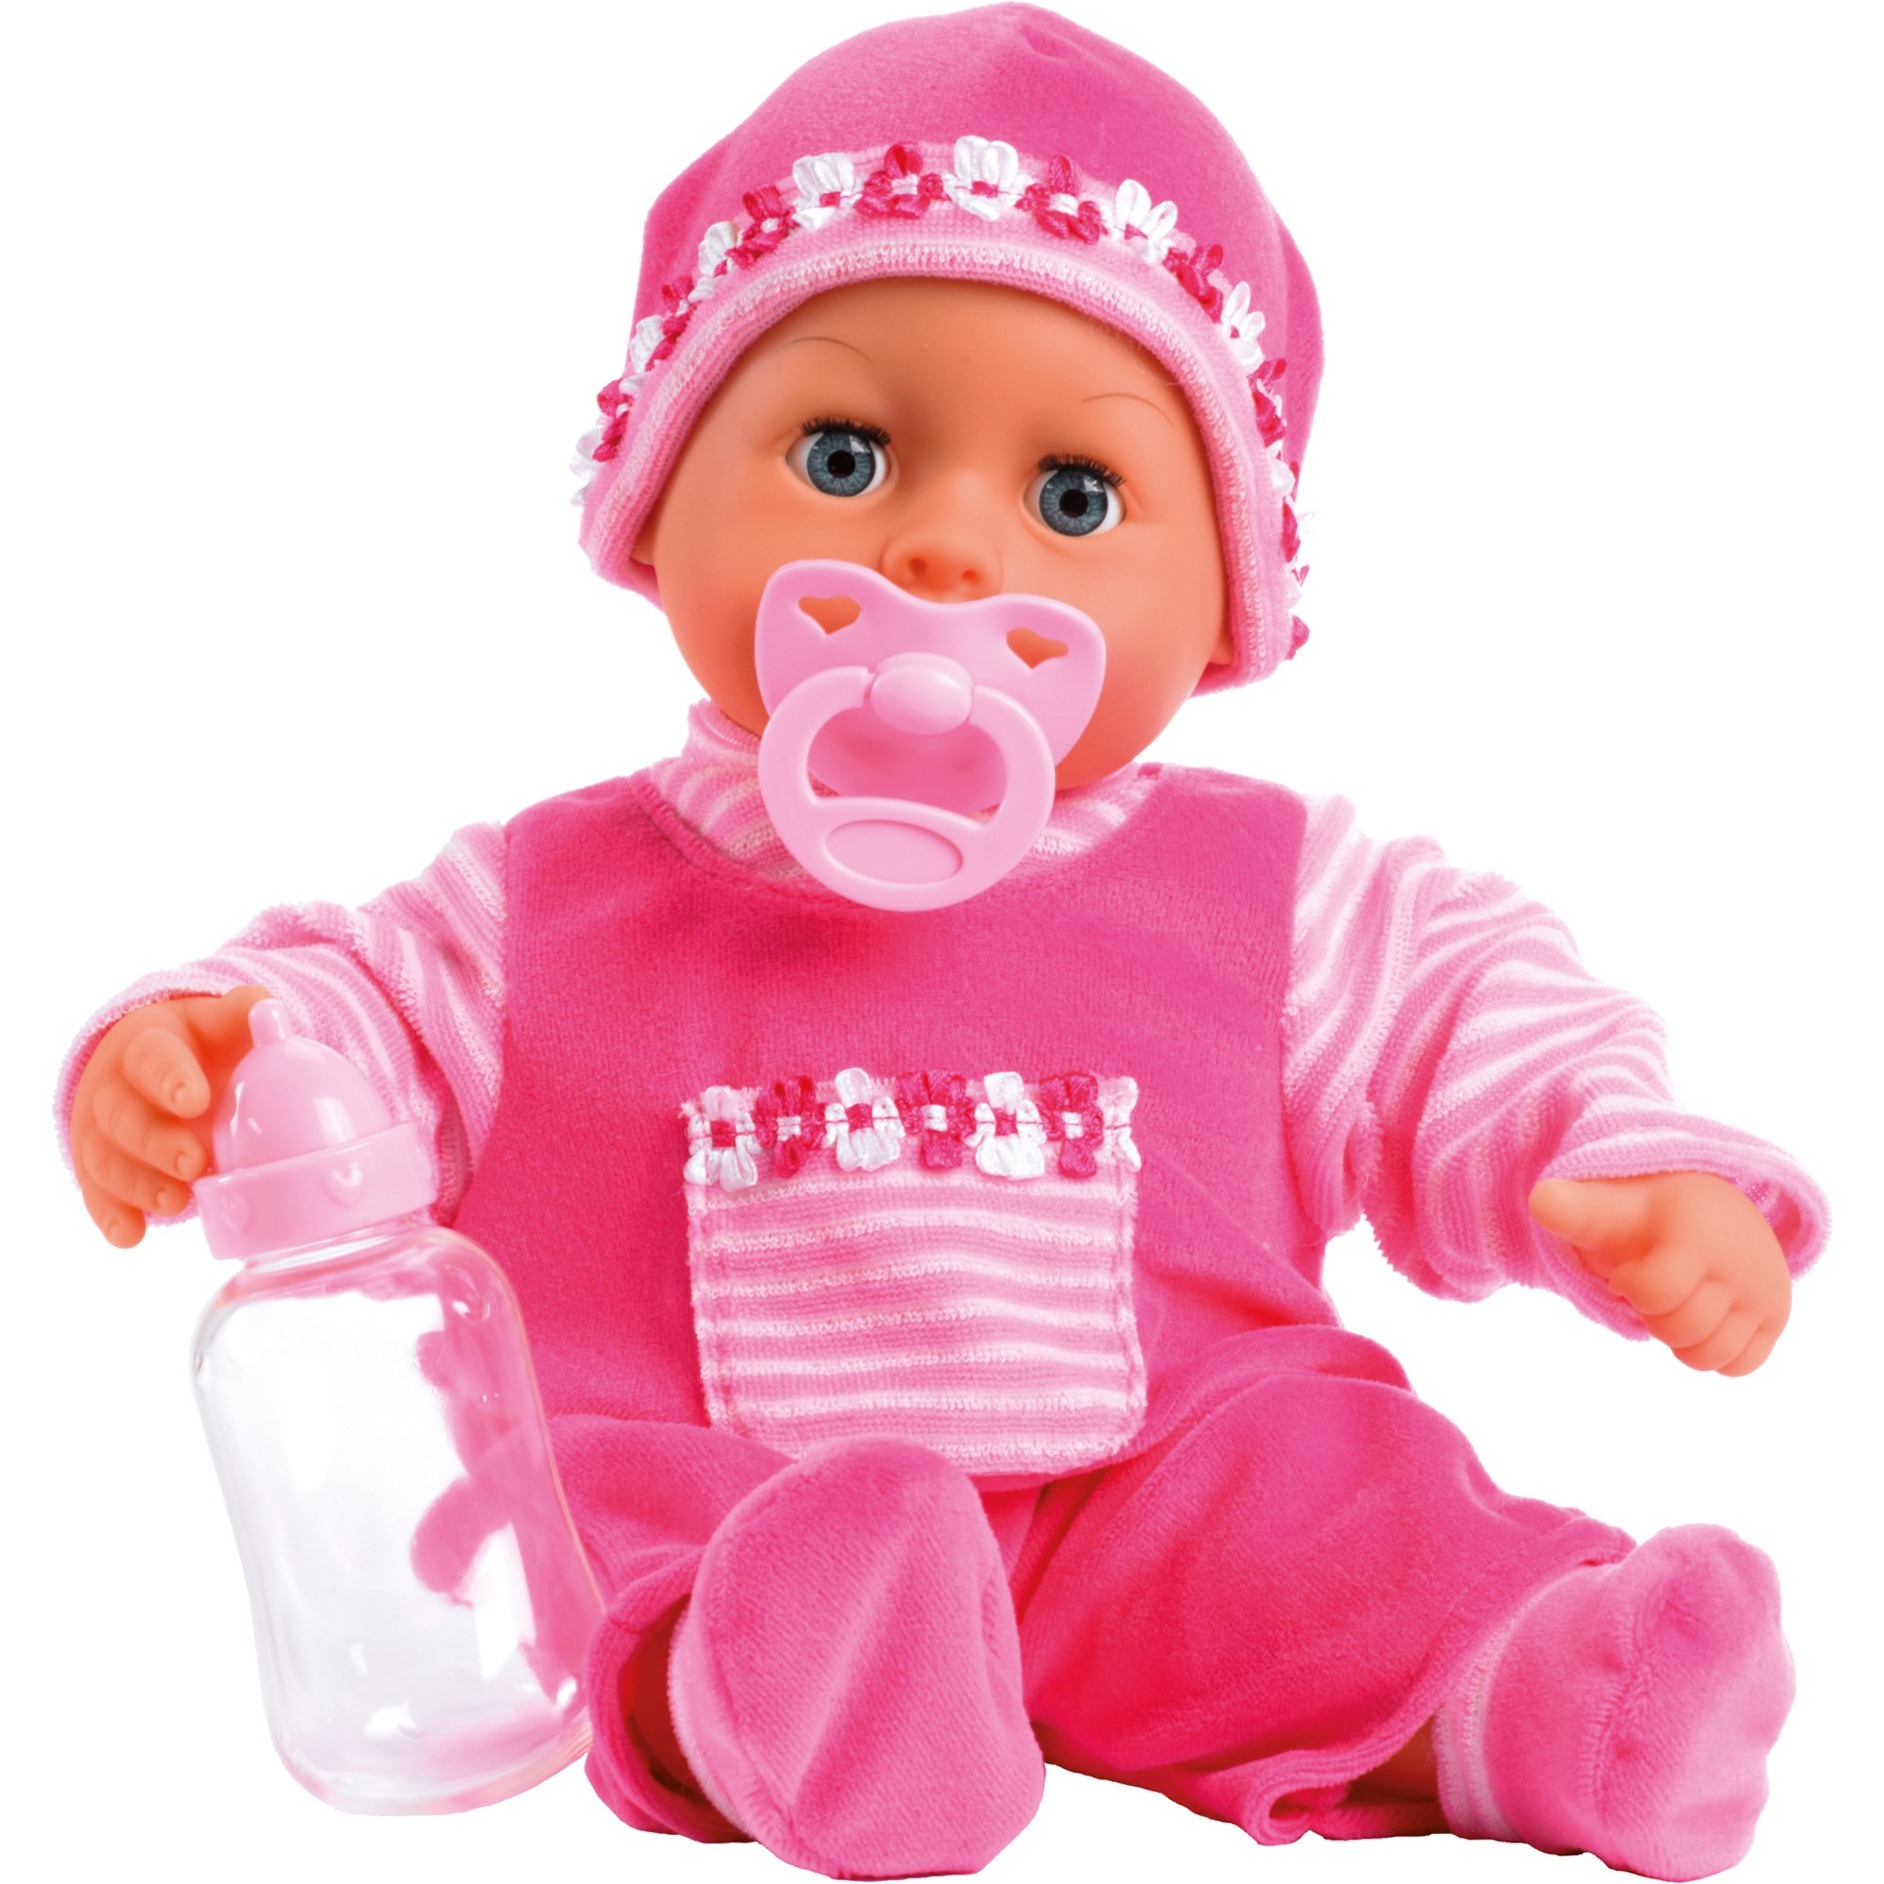 Image of Alternate - First Words Baby pink 38 cm, Puppe online einkaufen bei Alternate